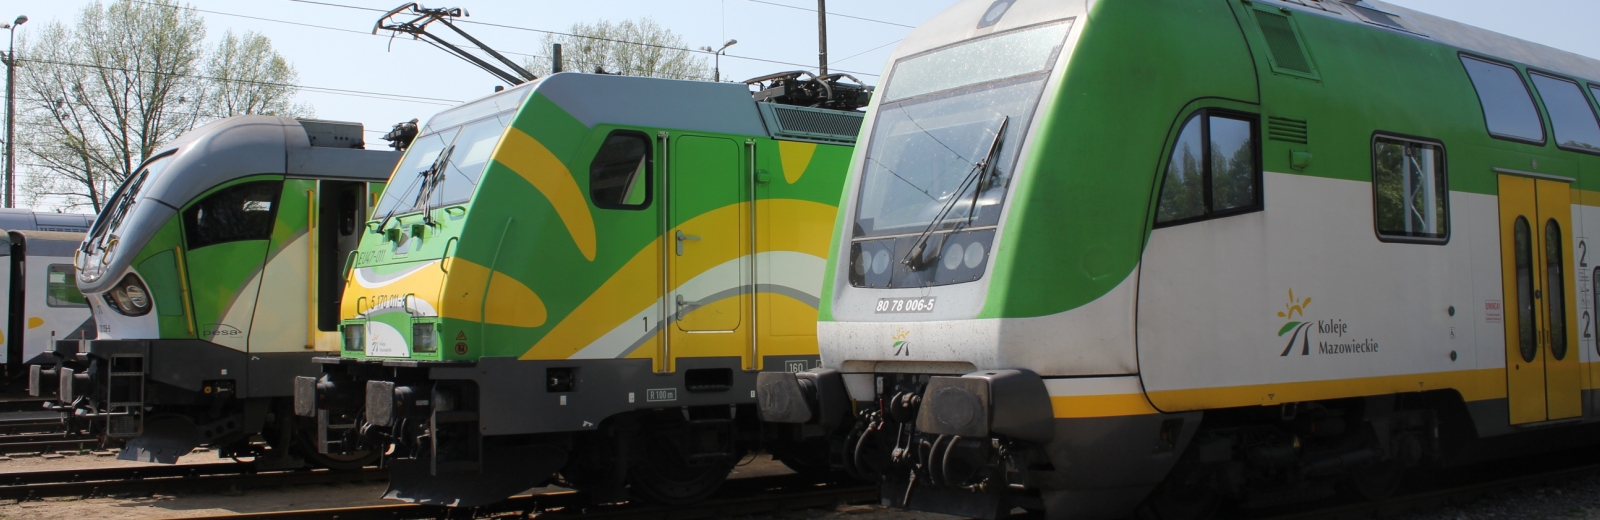 Zmiany w rozkładzie jazdy pociągów Kolei Mazowieckich w okresie od 11 kwietnia do 3 maja 2020 r.